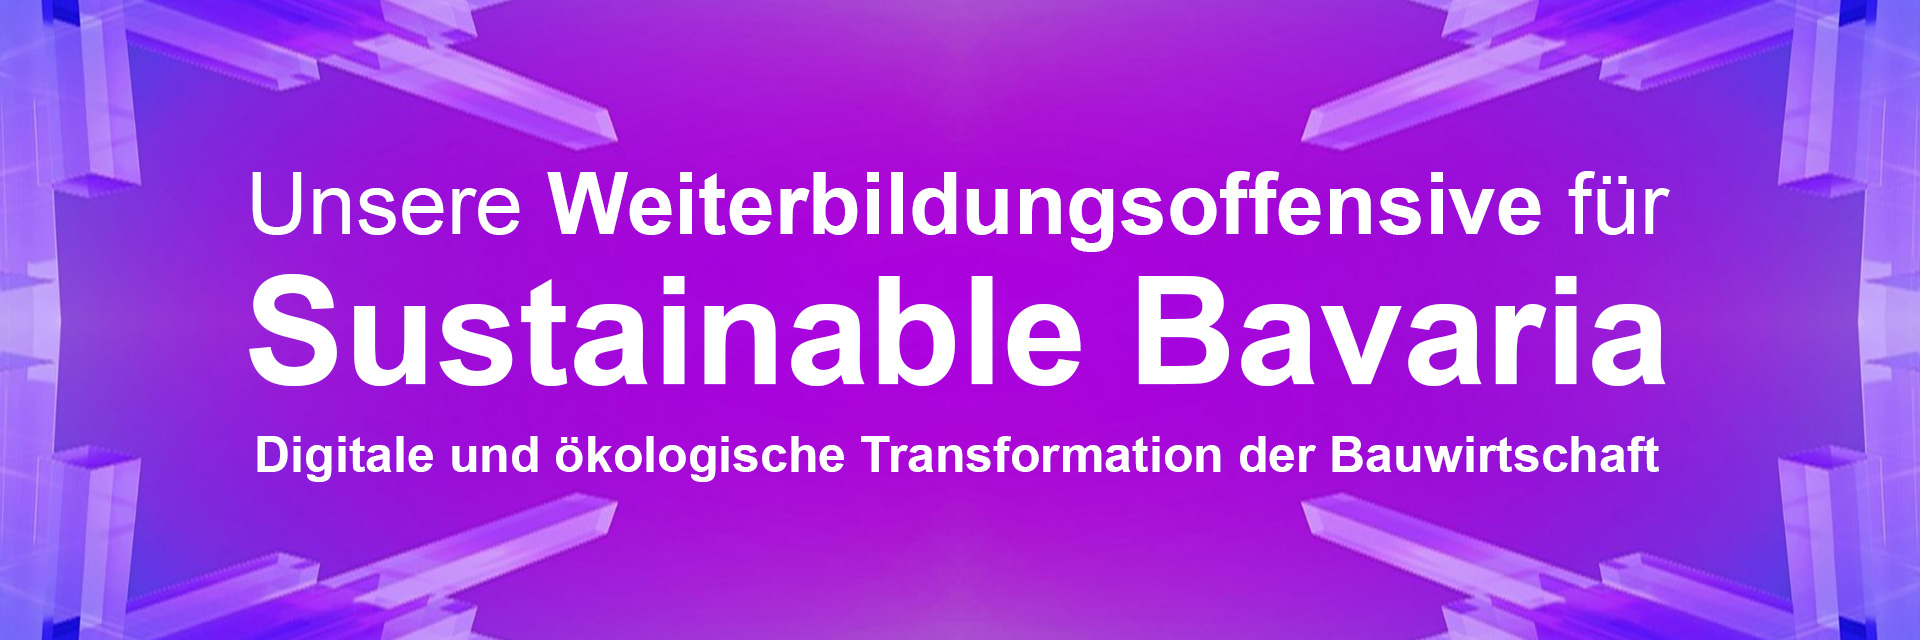 Unsere Weiterbildungsoffensive für "Sustainable Bavaria"